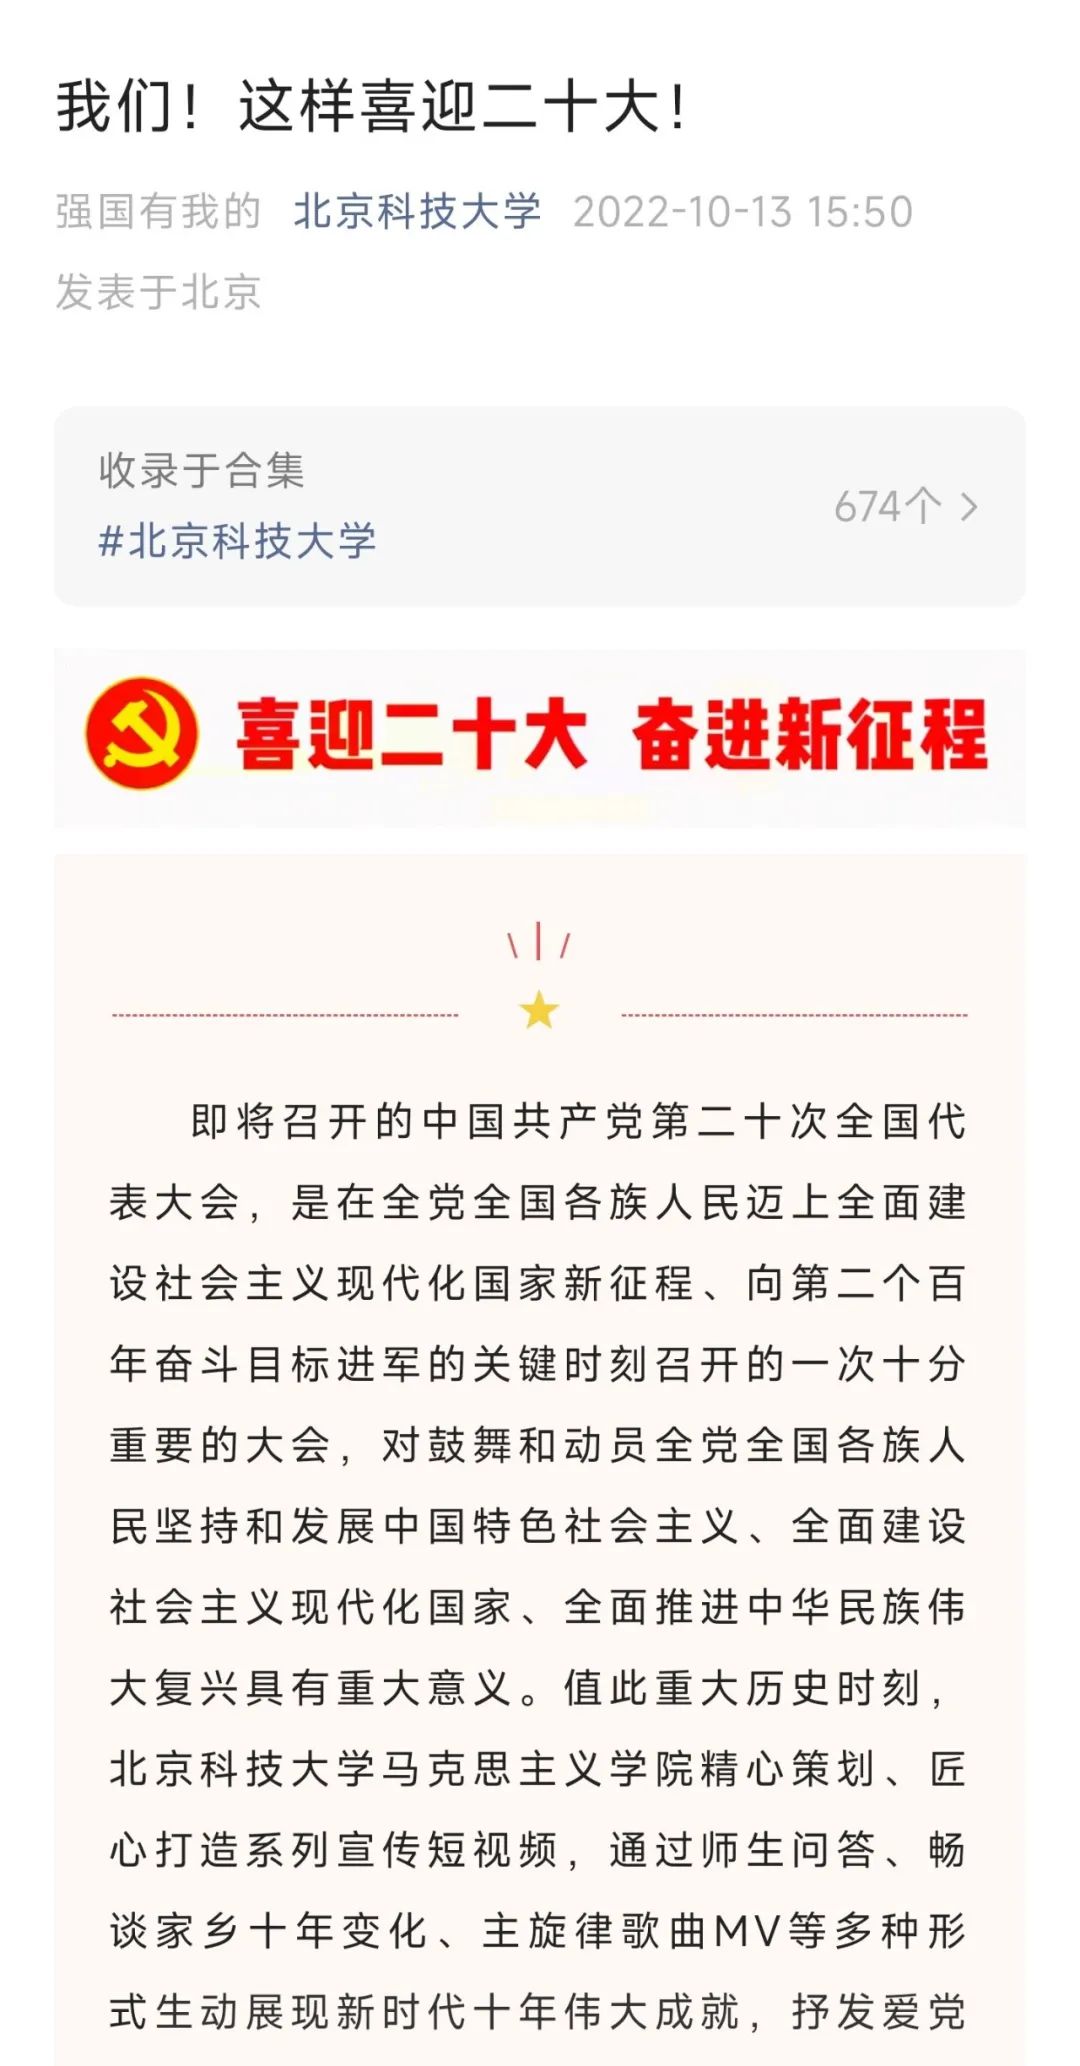 北京科技大学深入学习宣传贯彻党的二十大精神